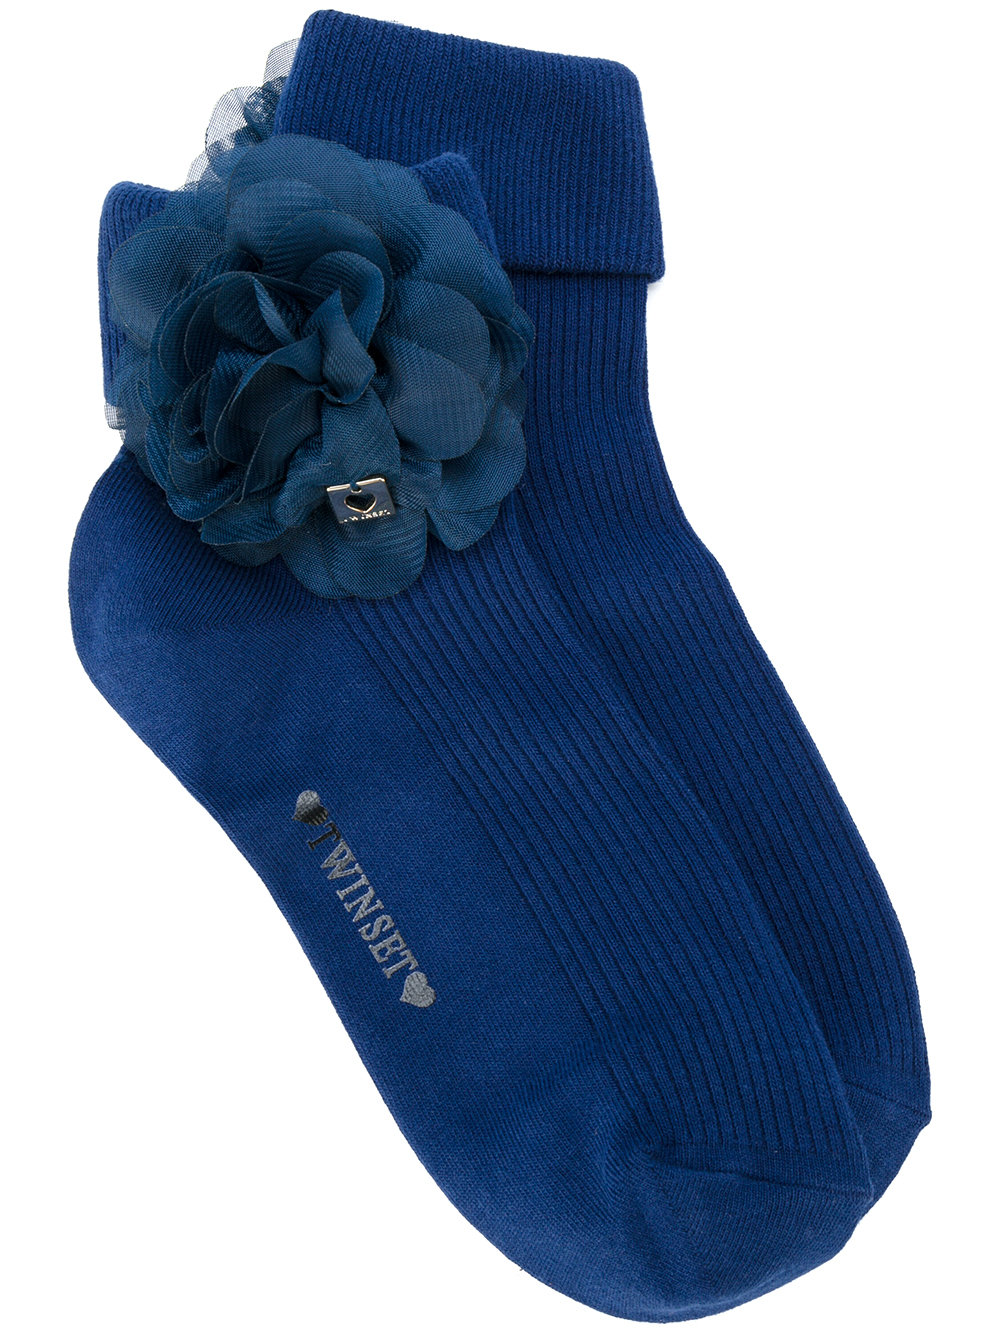 Мода. TWIN-SET носки с цветочной отделкой 2 771 ₽